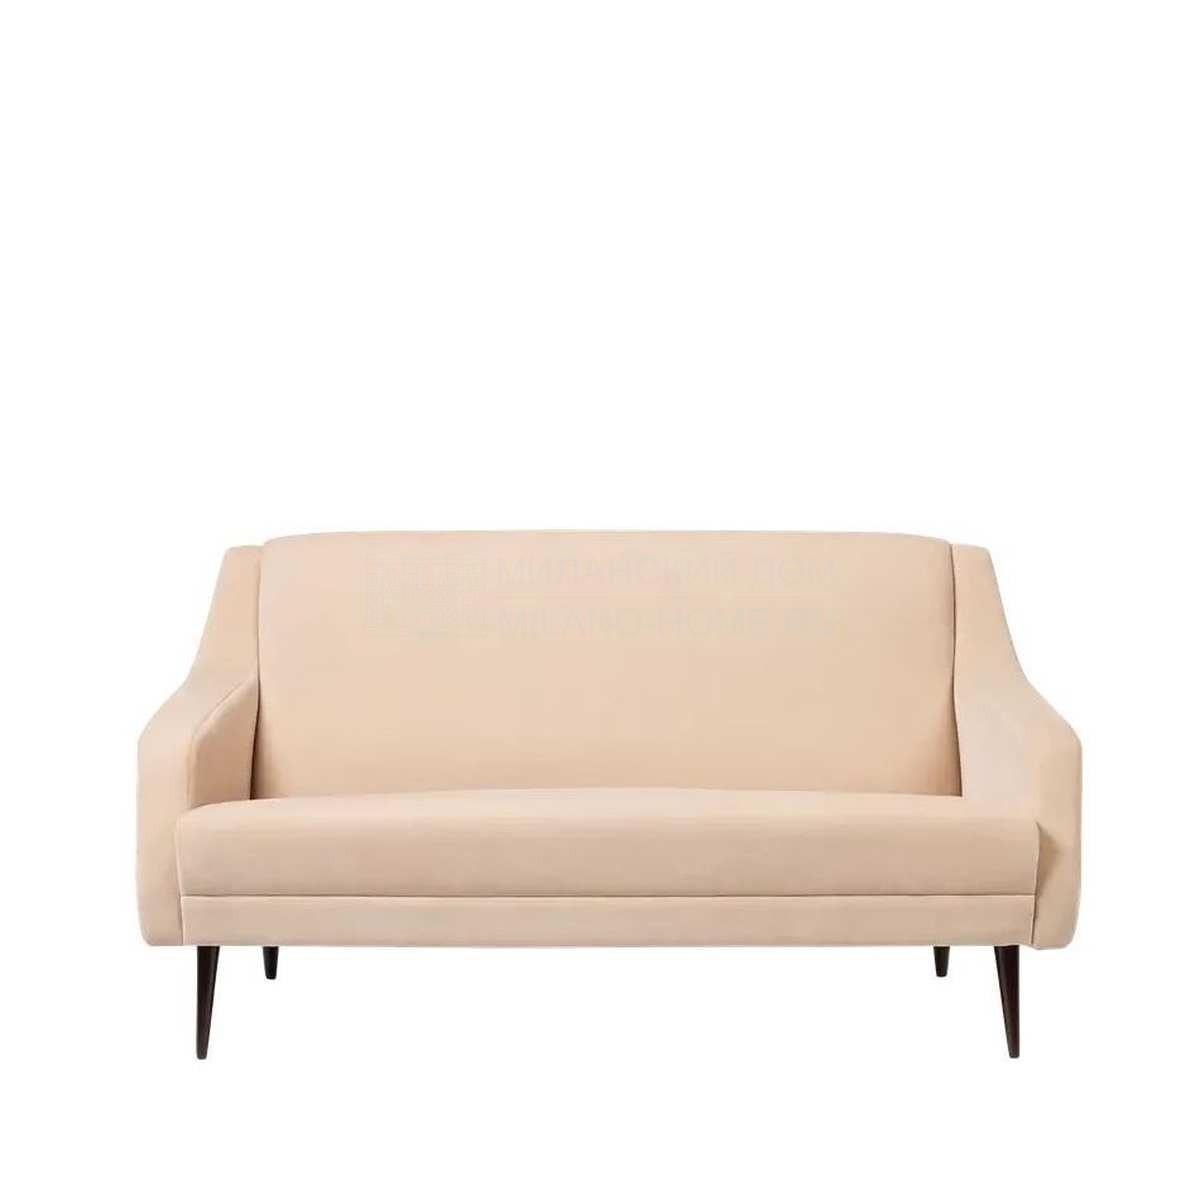 Прямой диван CDC.2 sofa из Дании фабрики GUBI